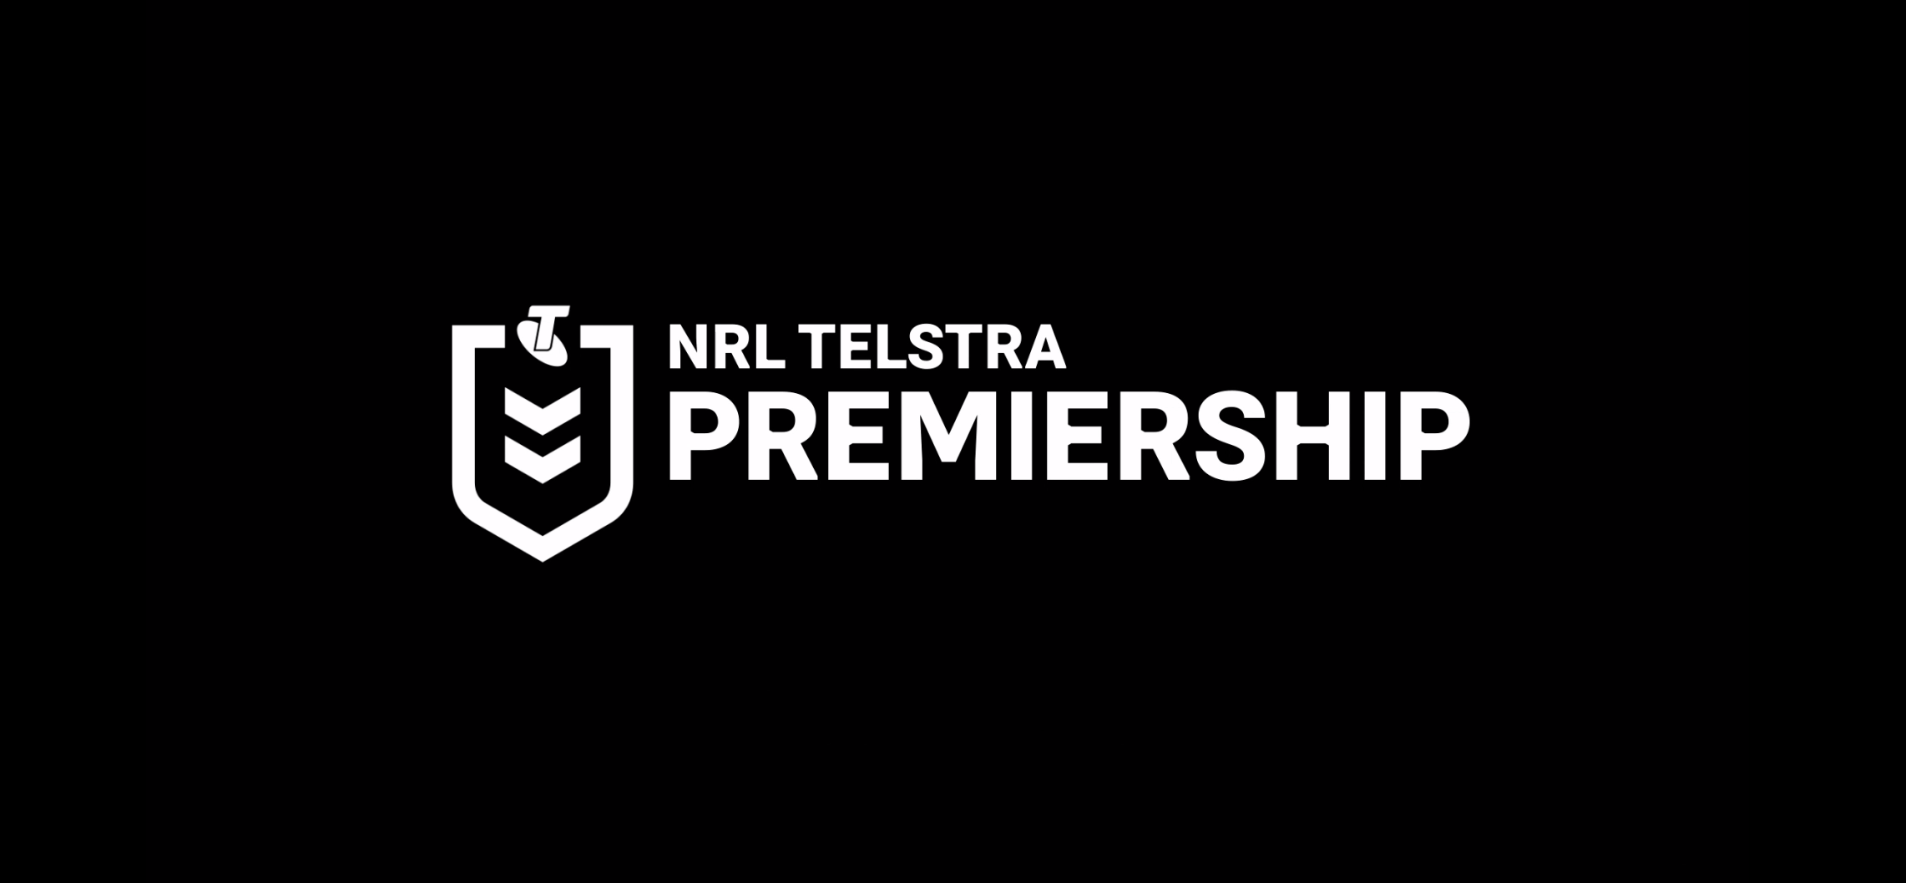 NRL Logo - NRL Telstra premiership draw 2019